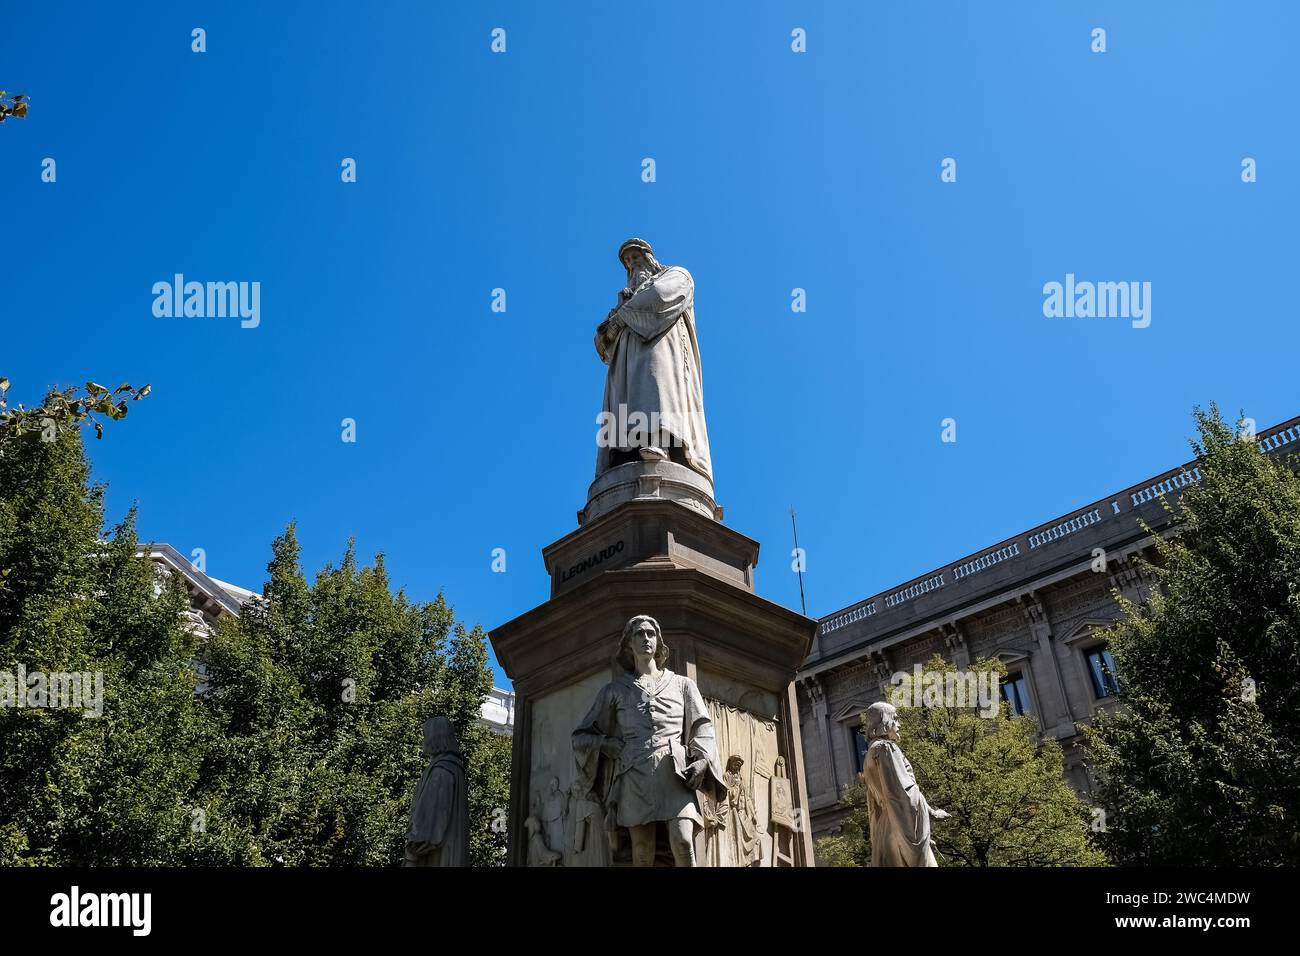 Détail du monument à Léonard de Vinci, un groupe sculptural commémoratif placé sur la Piazza della Scala de Milan Banque D'Images